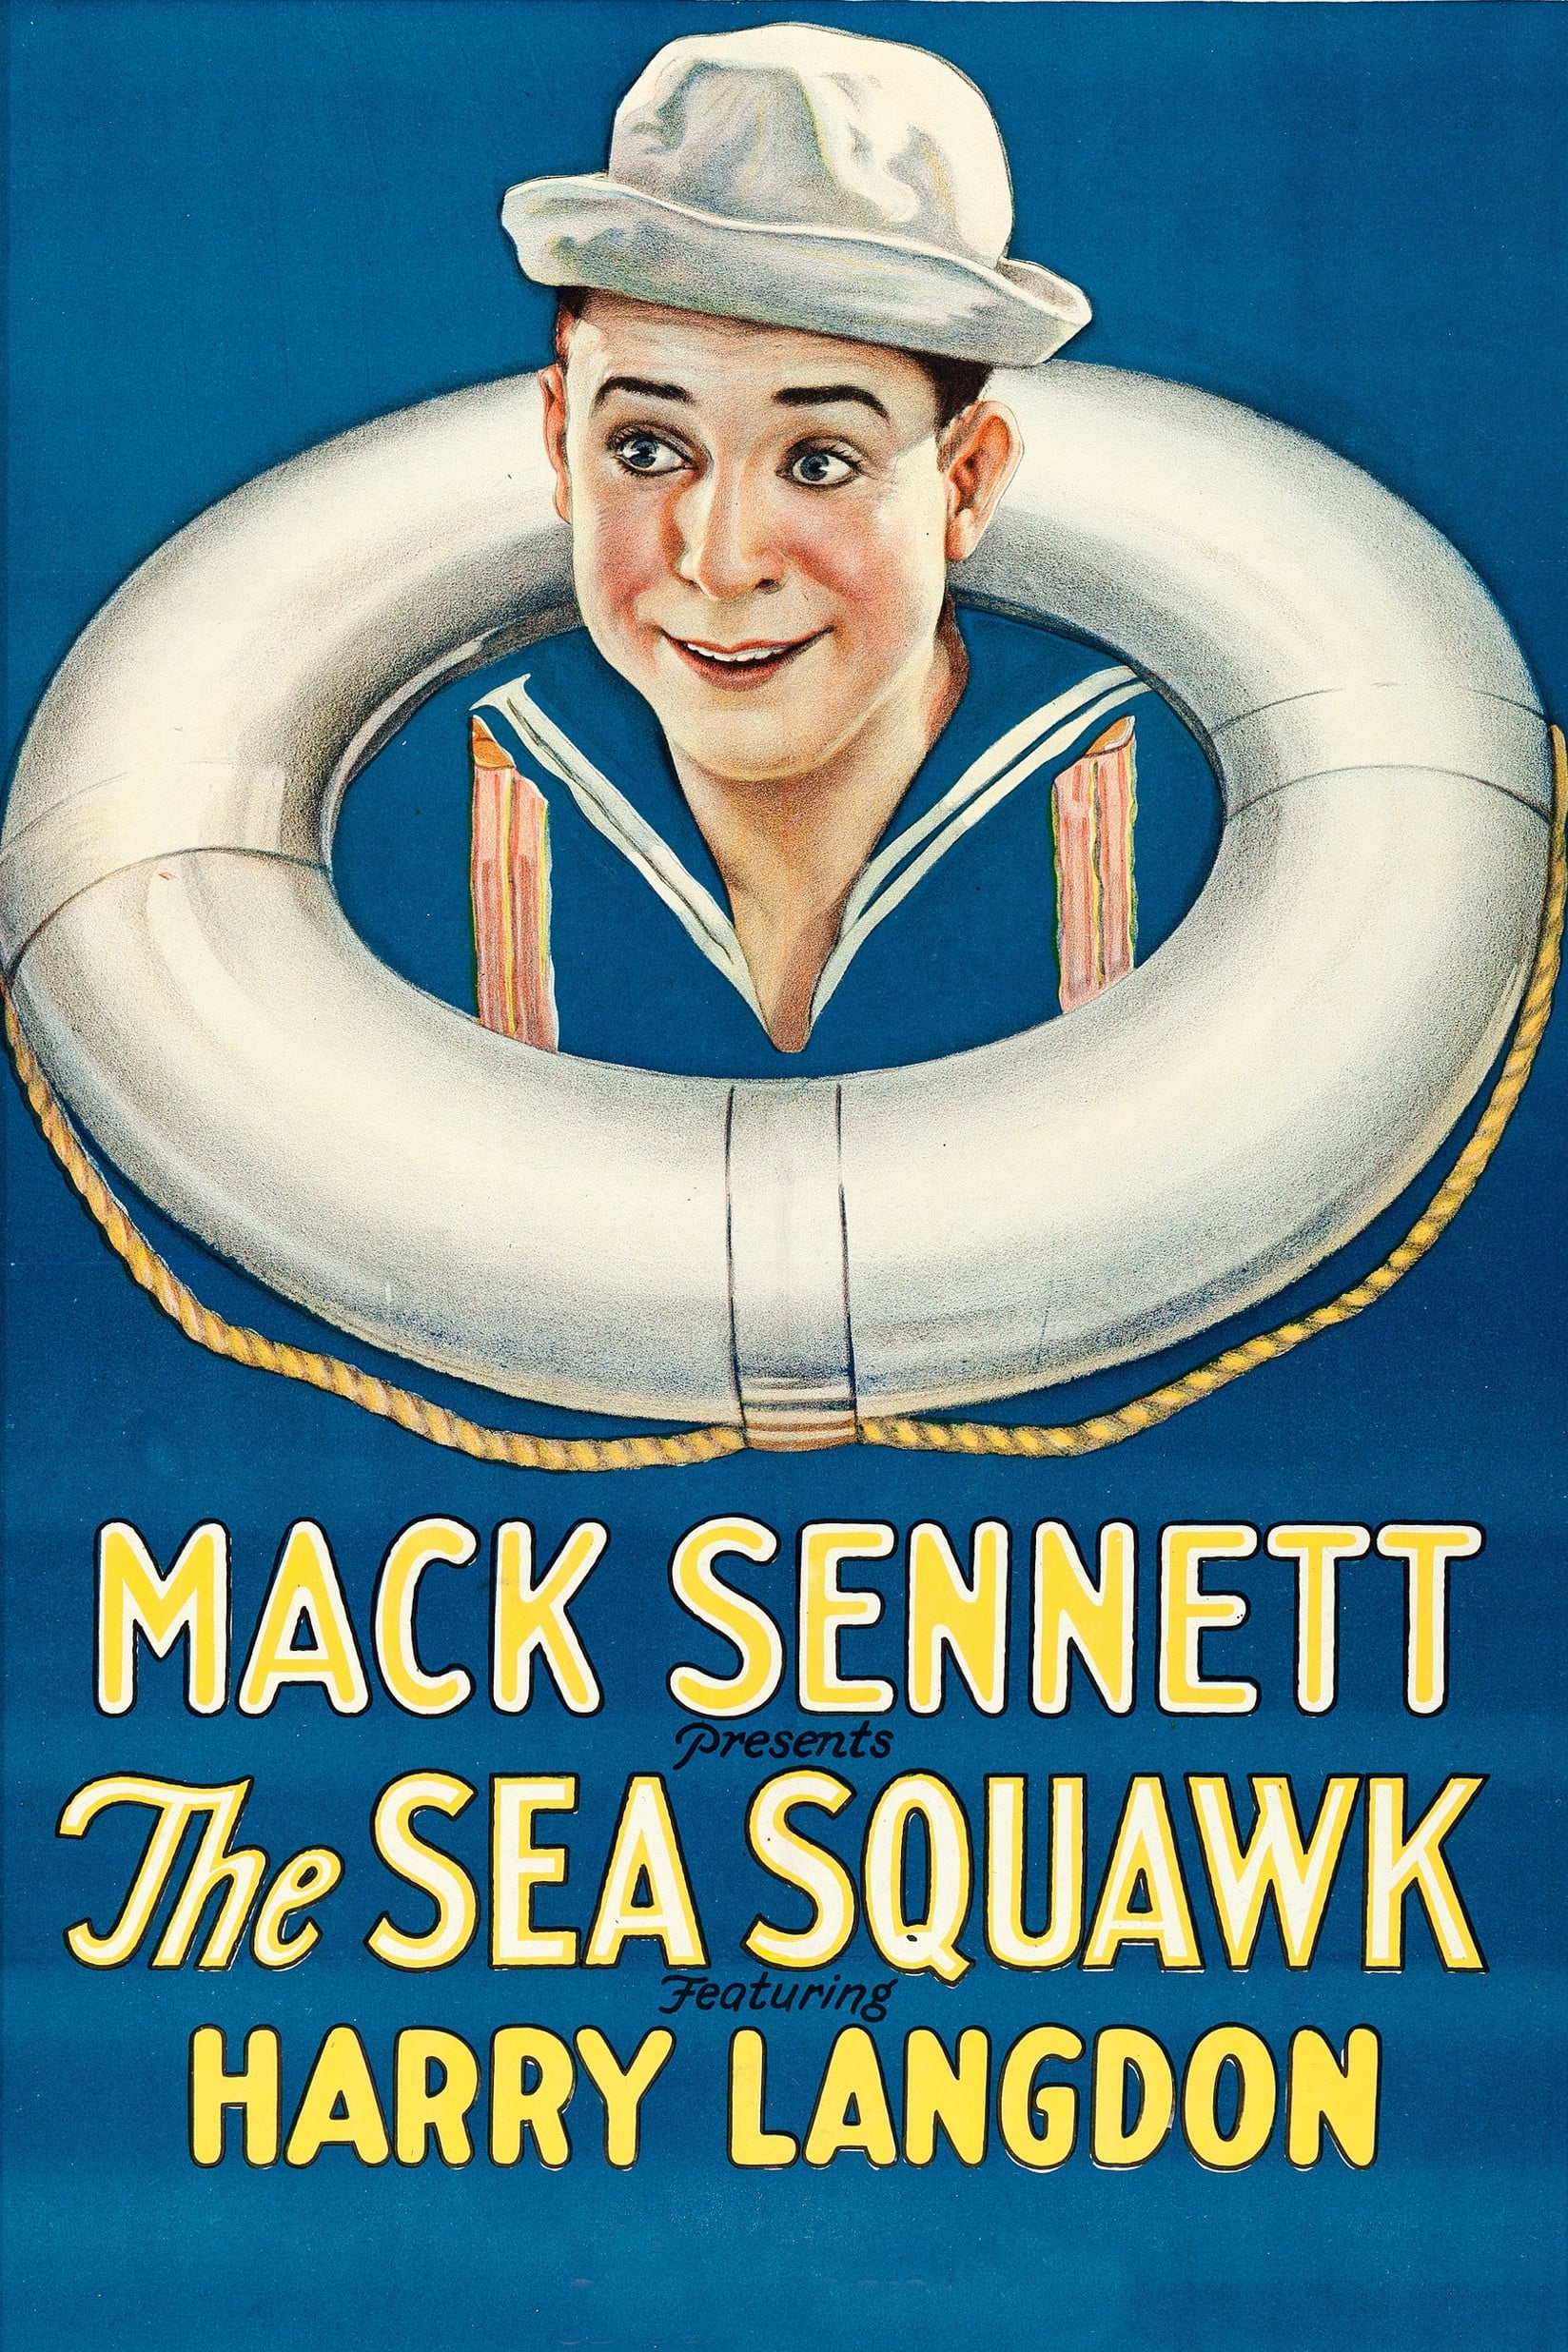 The Sea Squawk (1925)